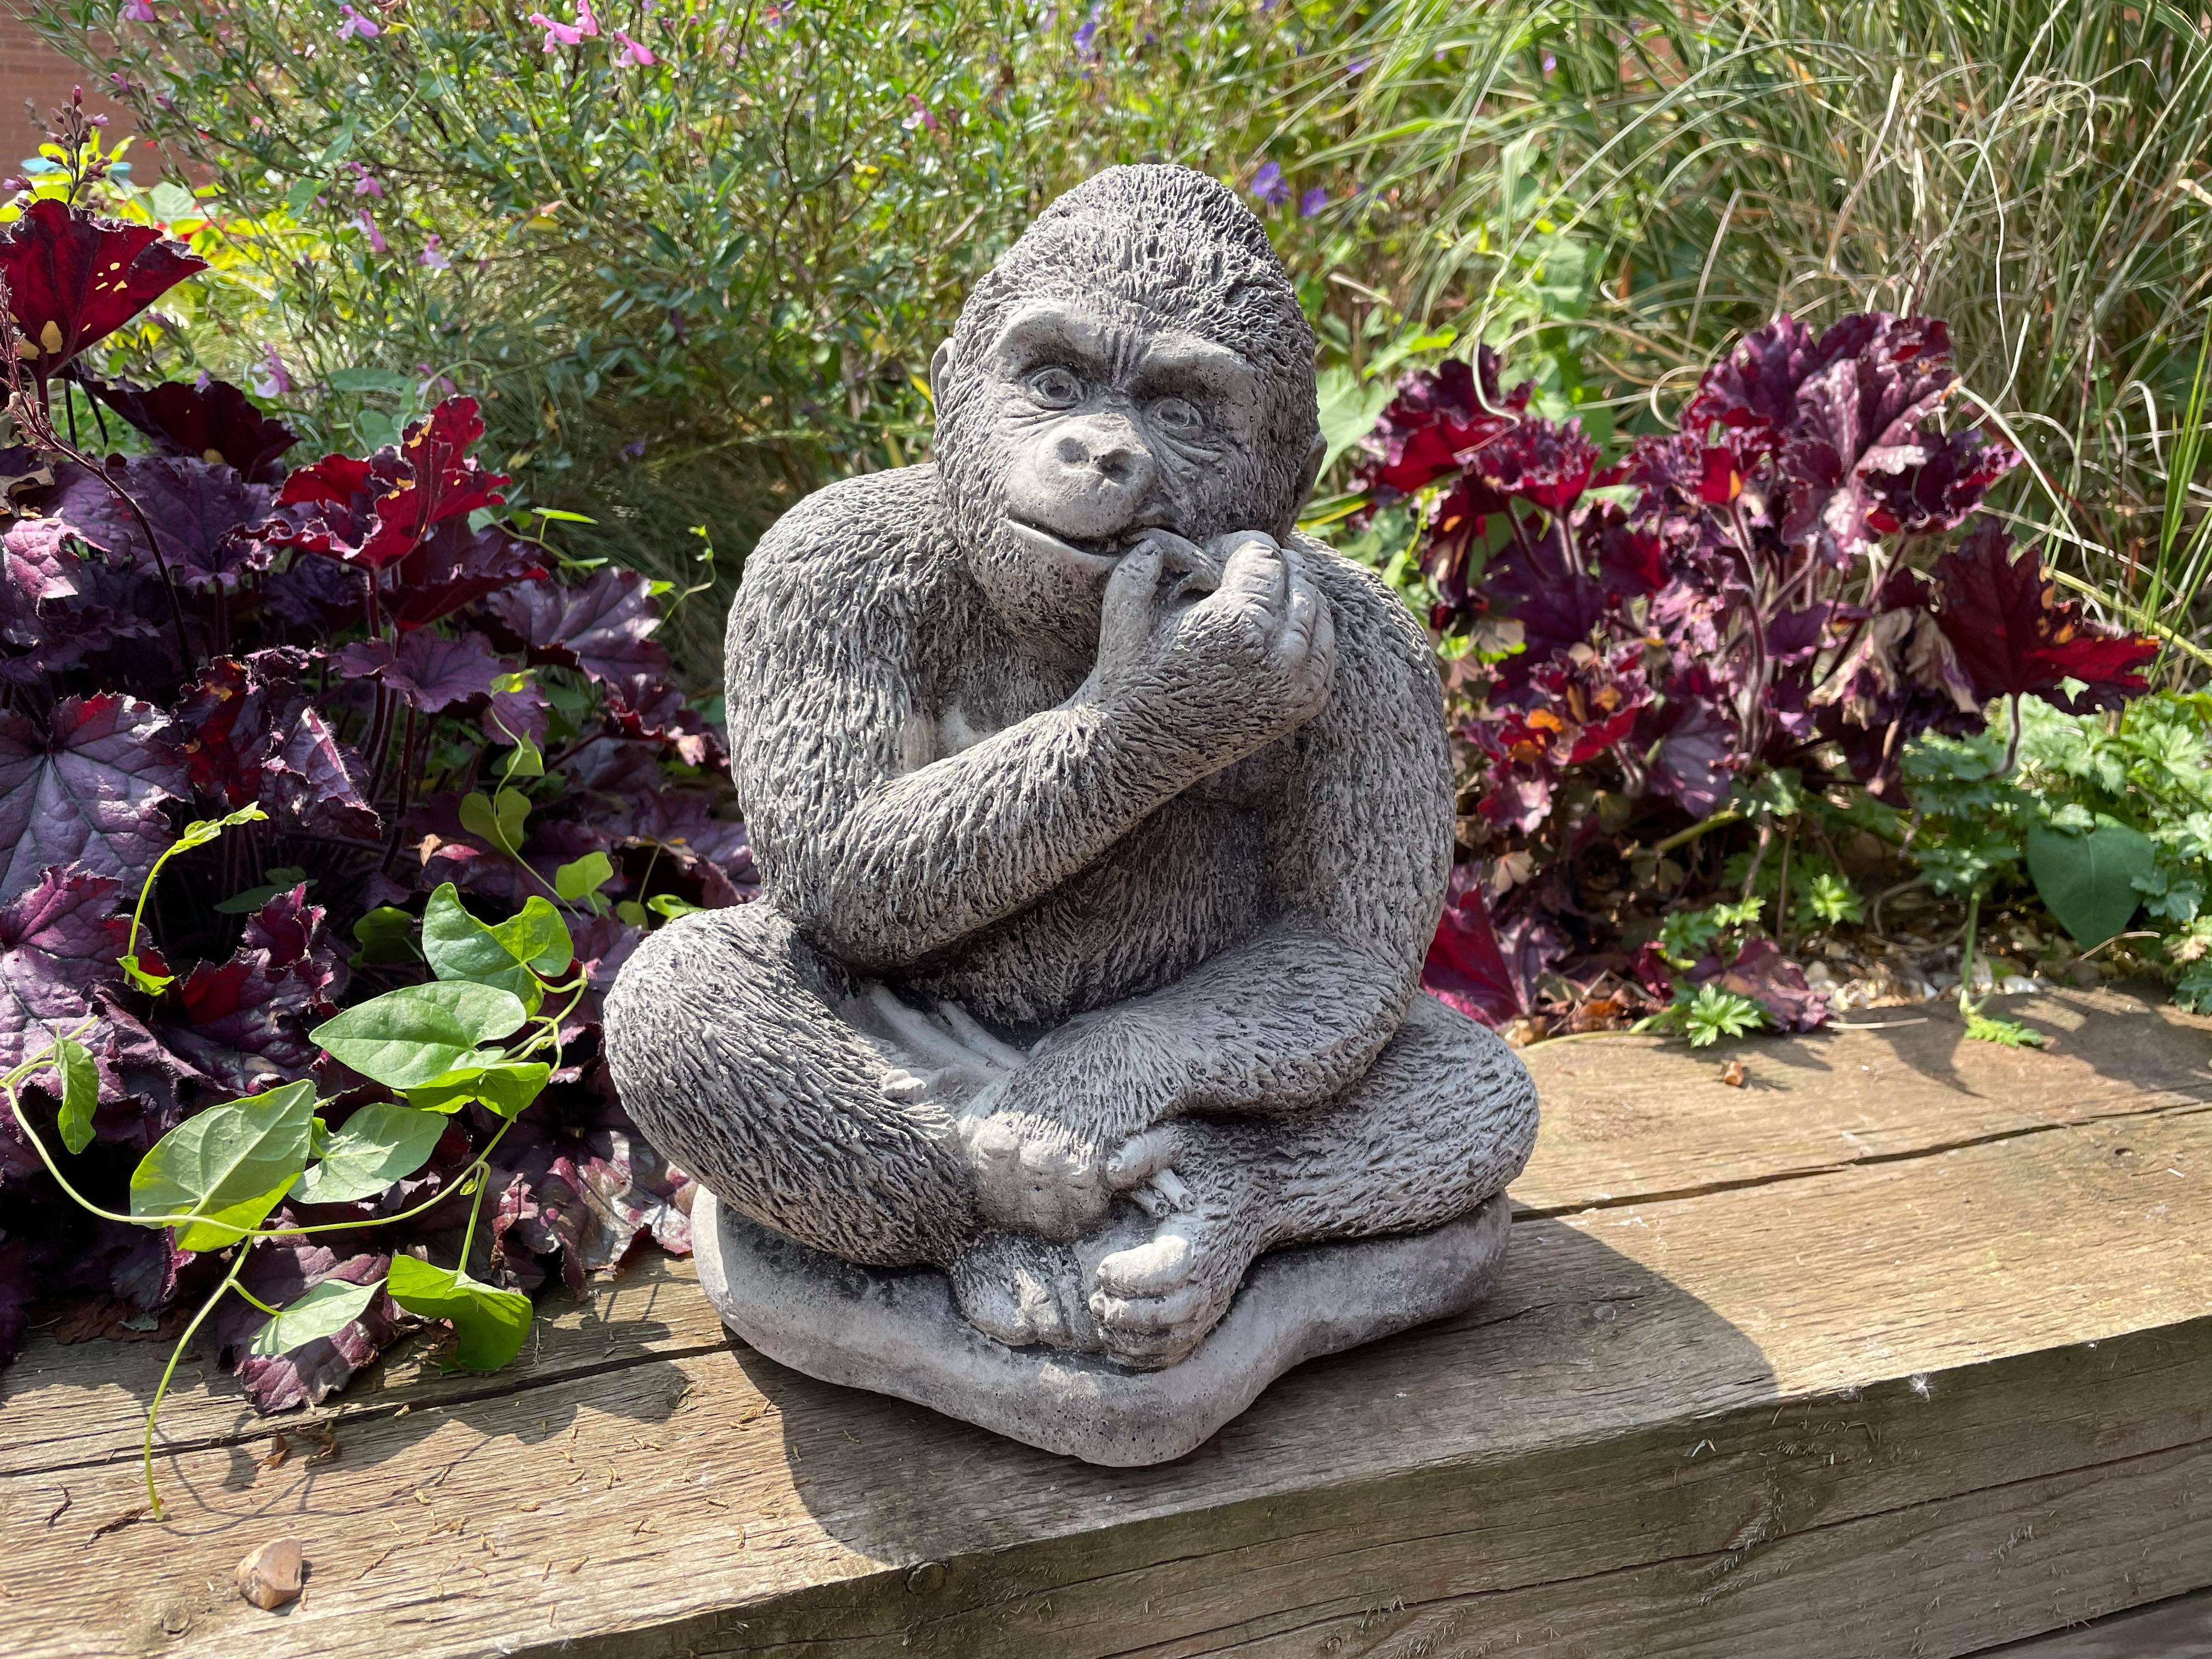 Gorilla eating Banana Stone Garden Statue